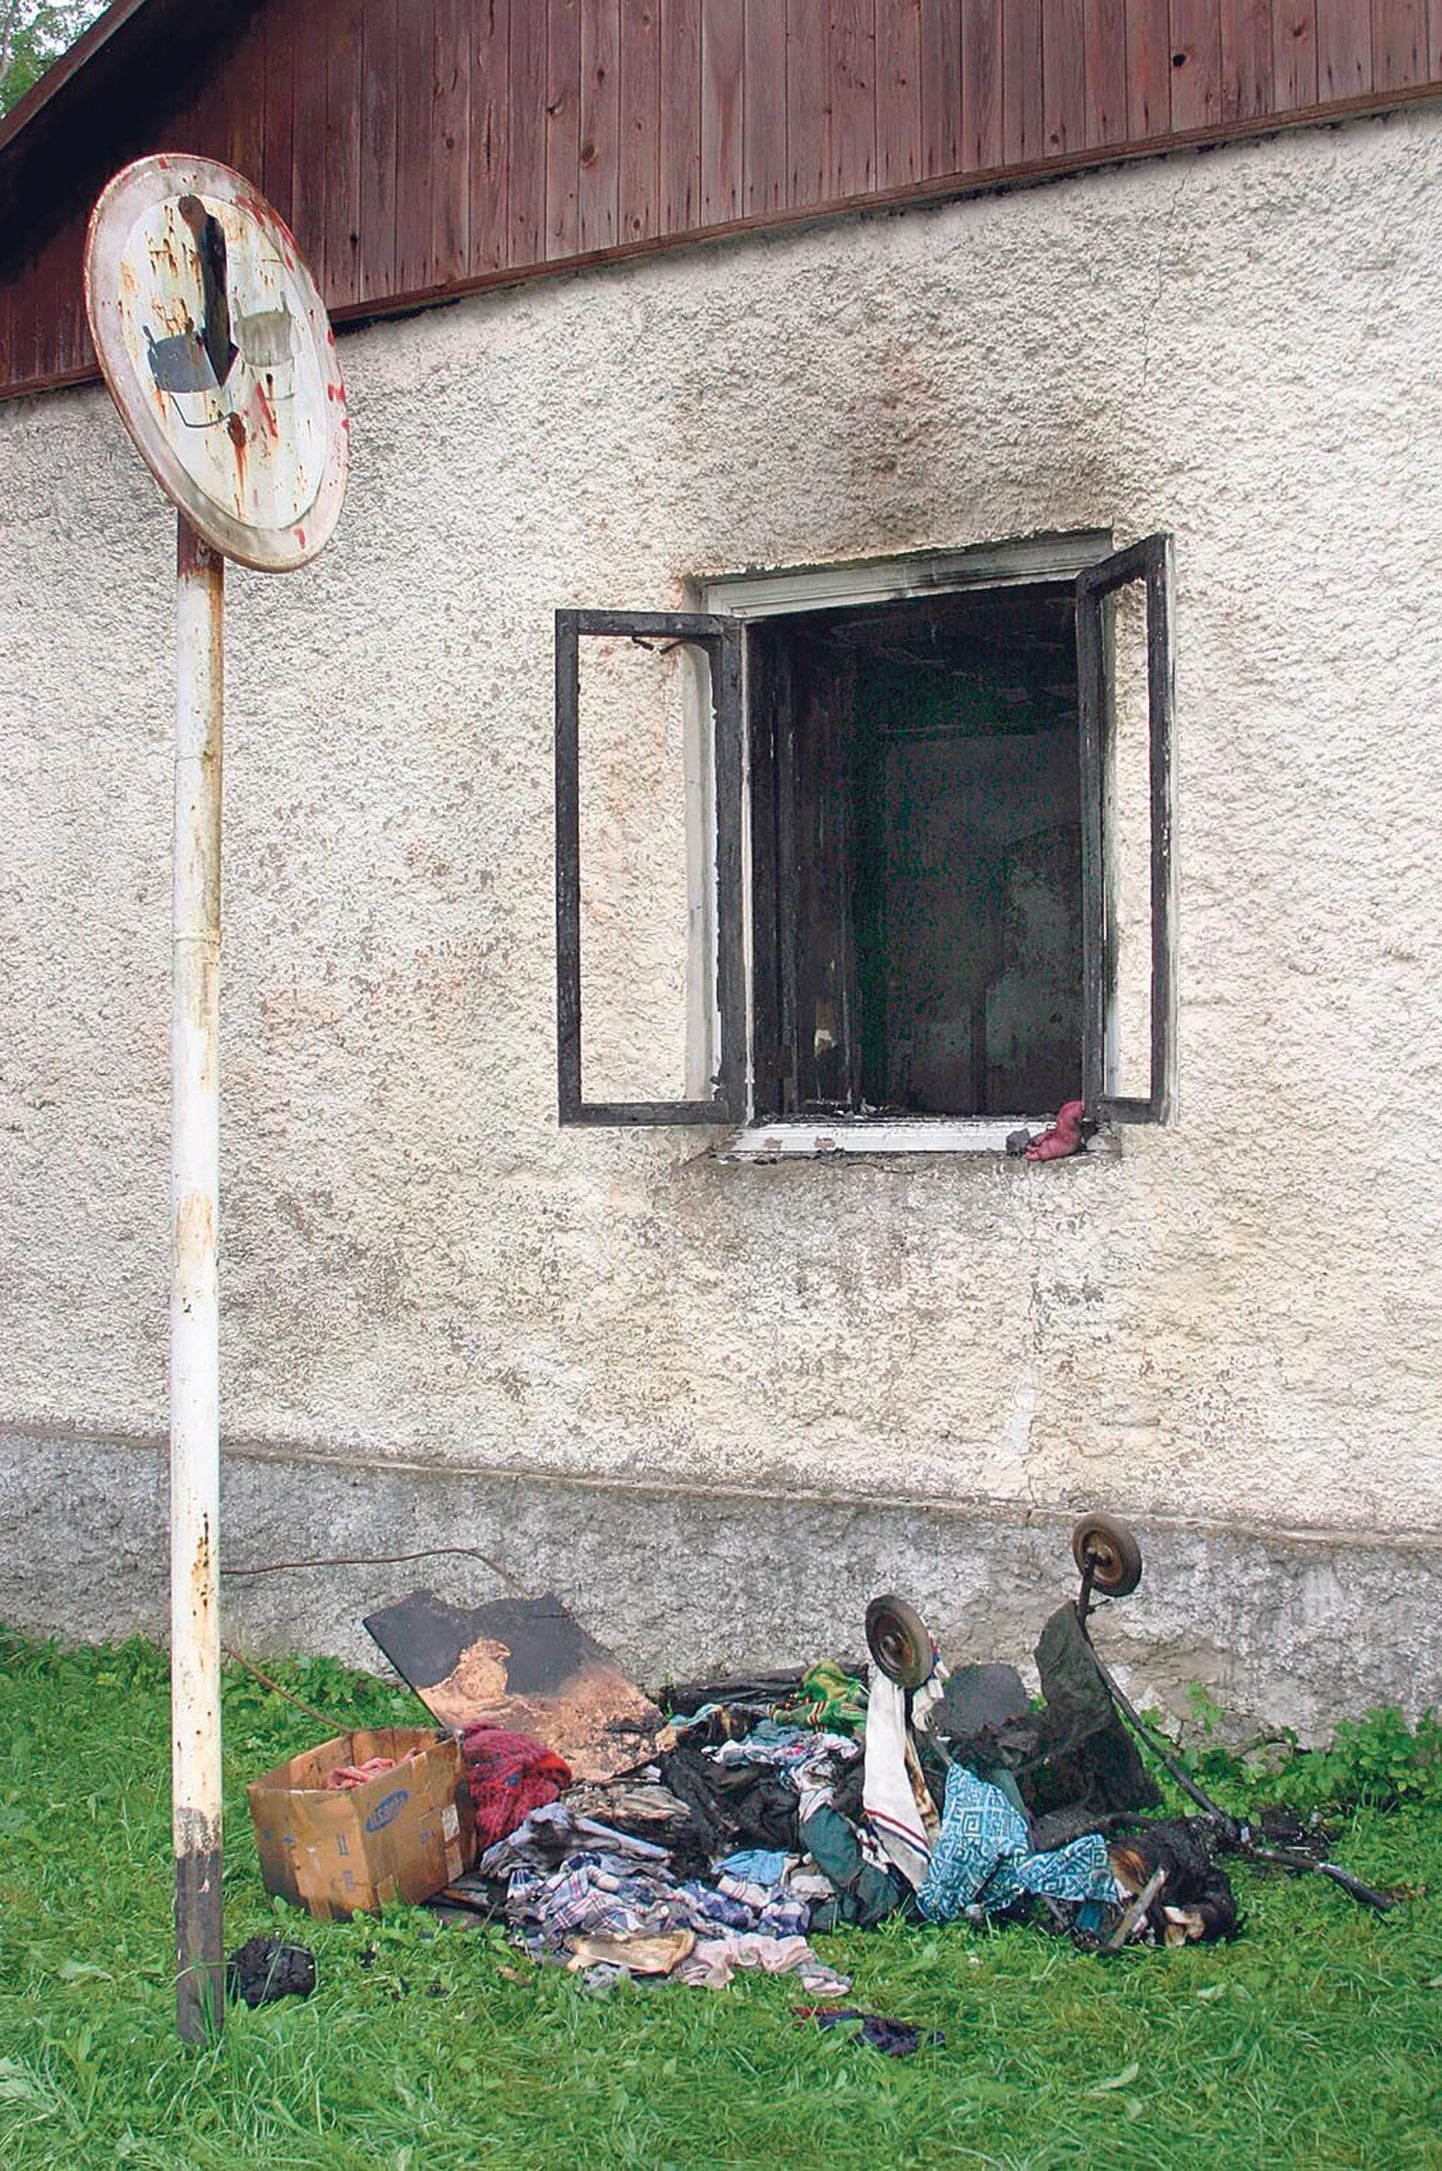 Viimane inimohvriga tulekahju Pärnumaa hoolekandeasutustes toimus 2004. aastal, Tihemetsa hooldekodus hukkus üks hoolealune.